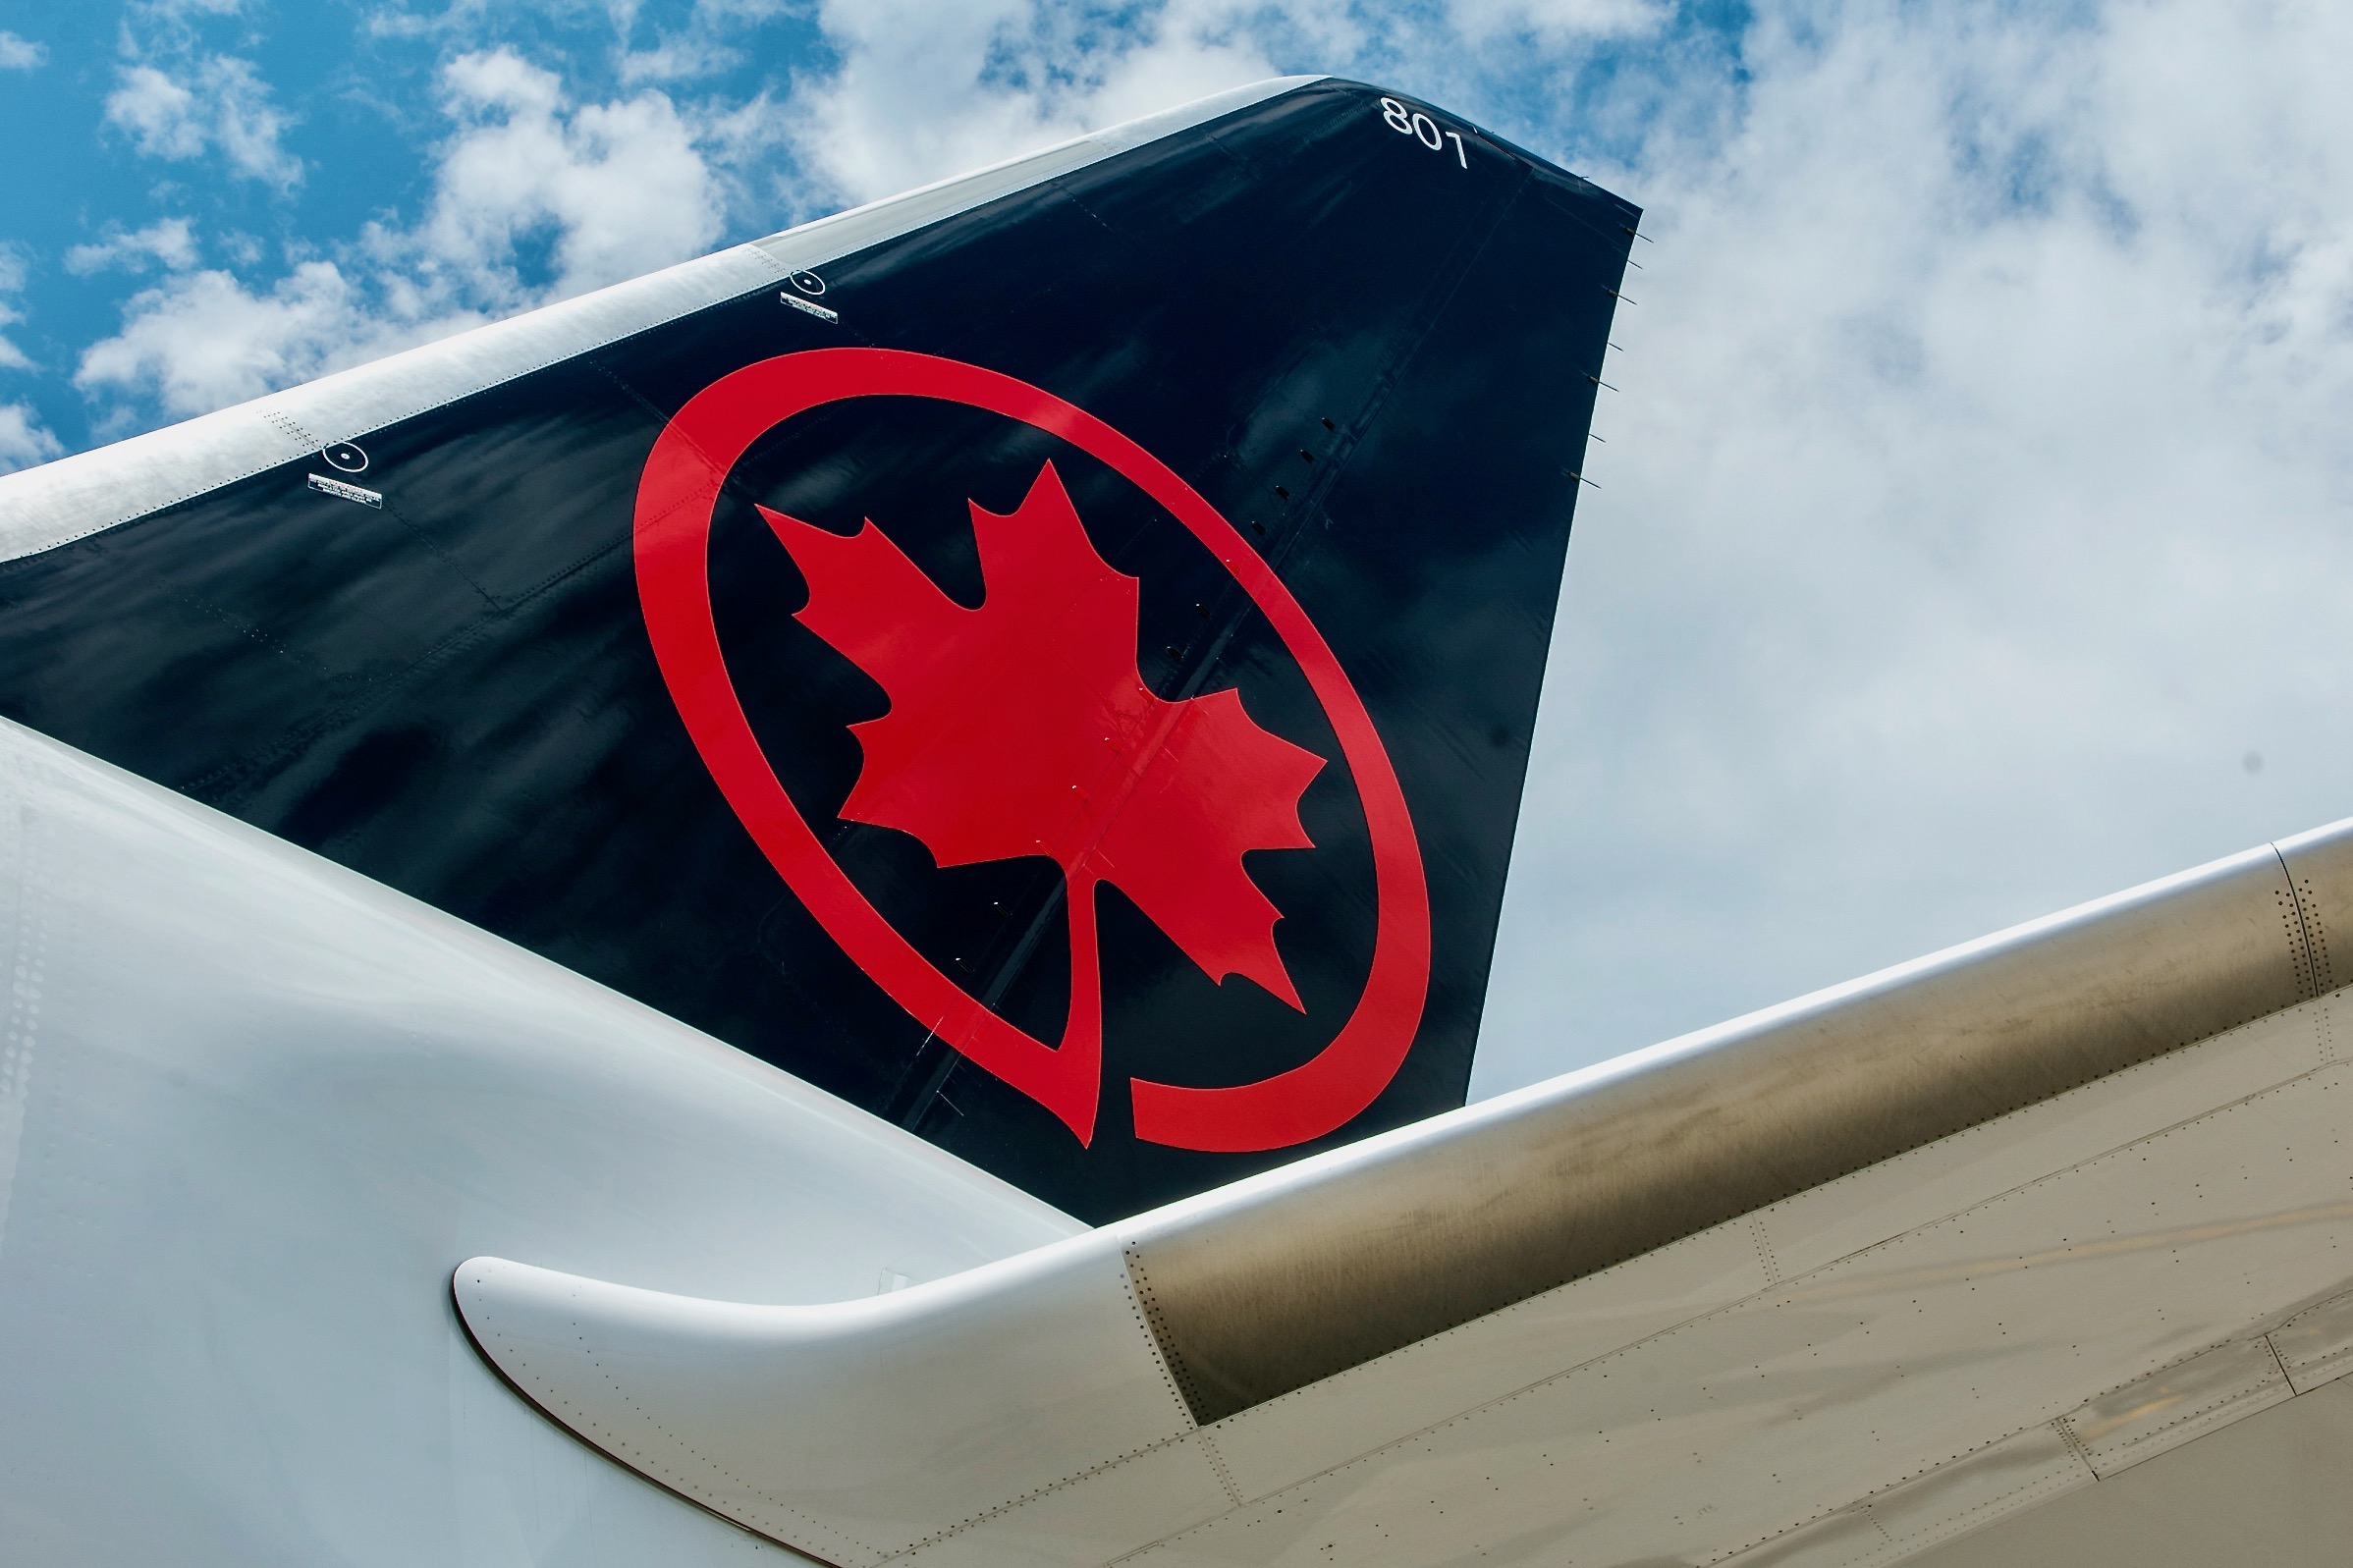 Tail of an Air Canada Plane